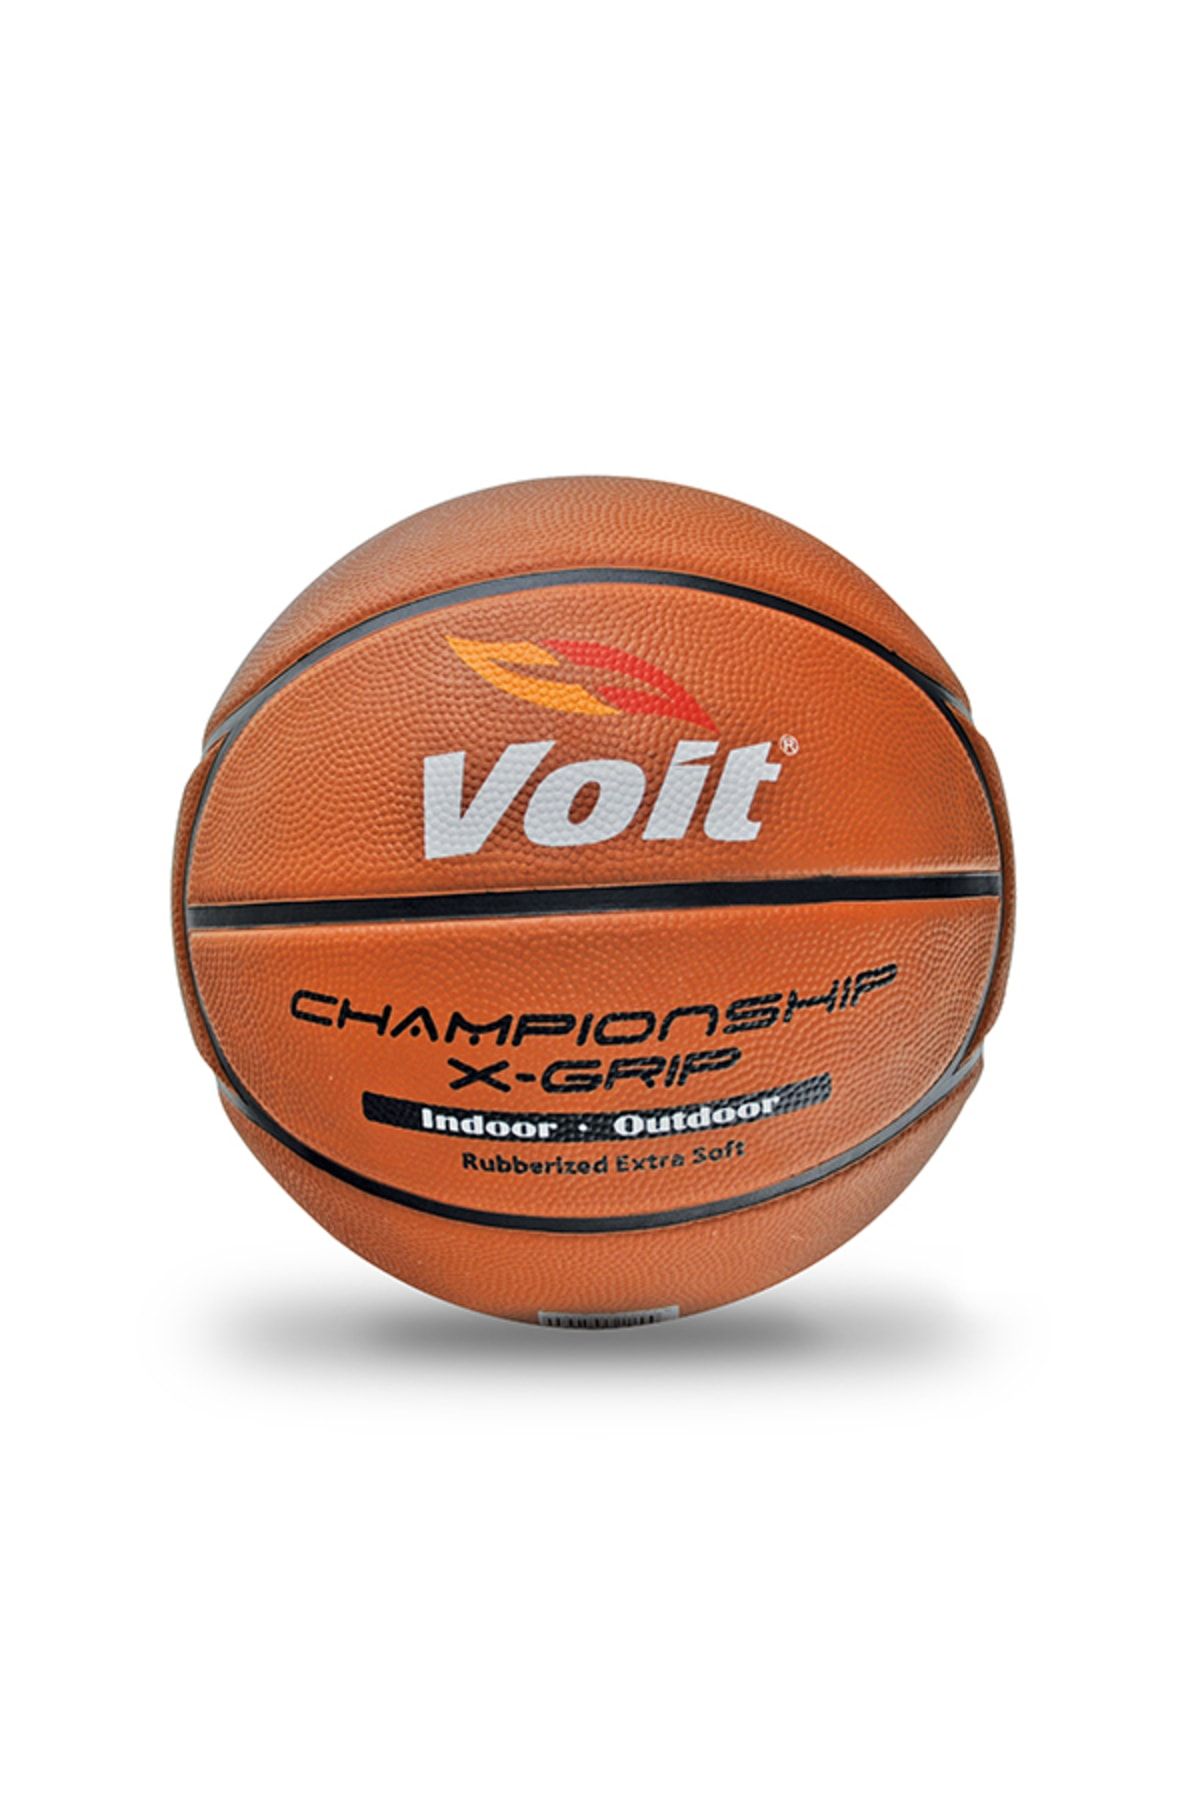 Voit Xgrıp Basketbol Topu N:7